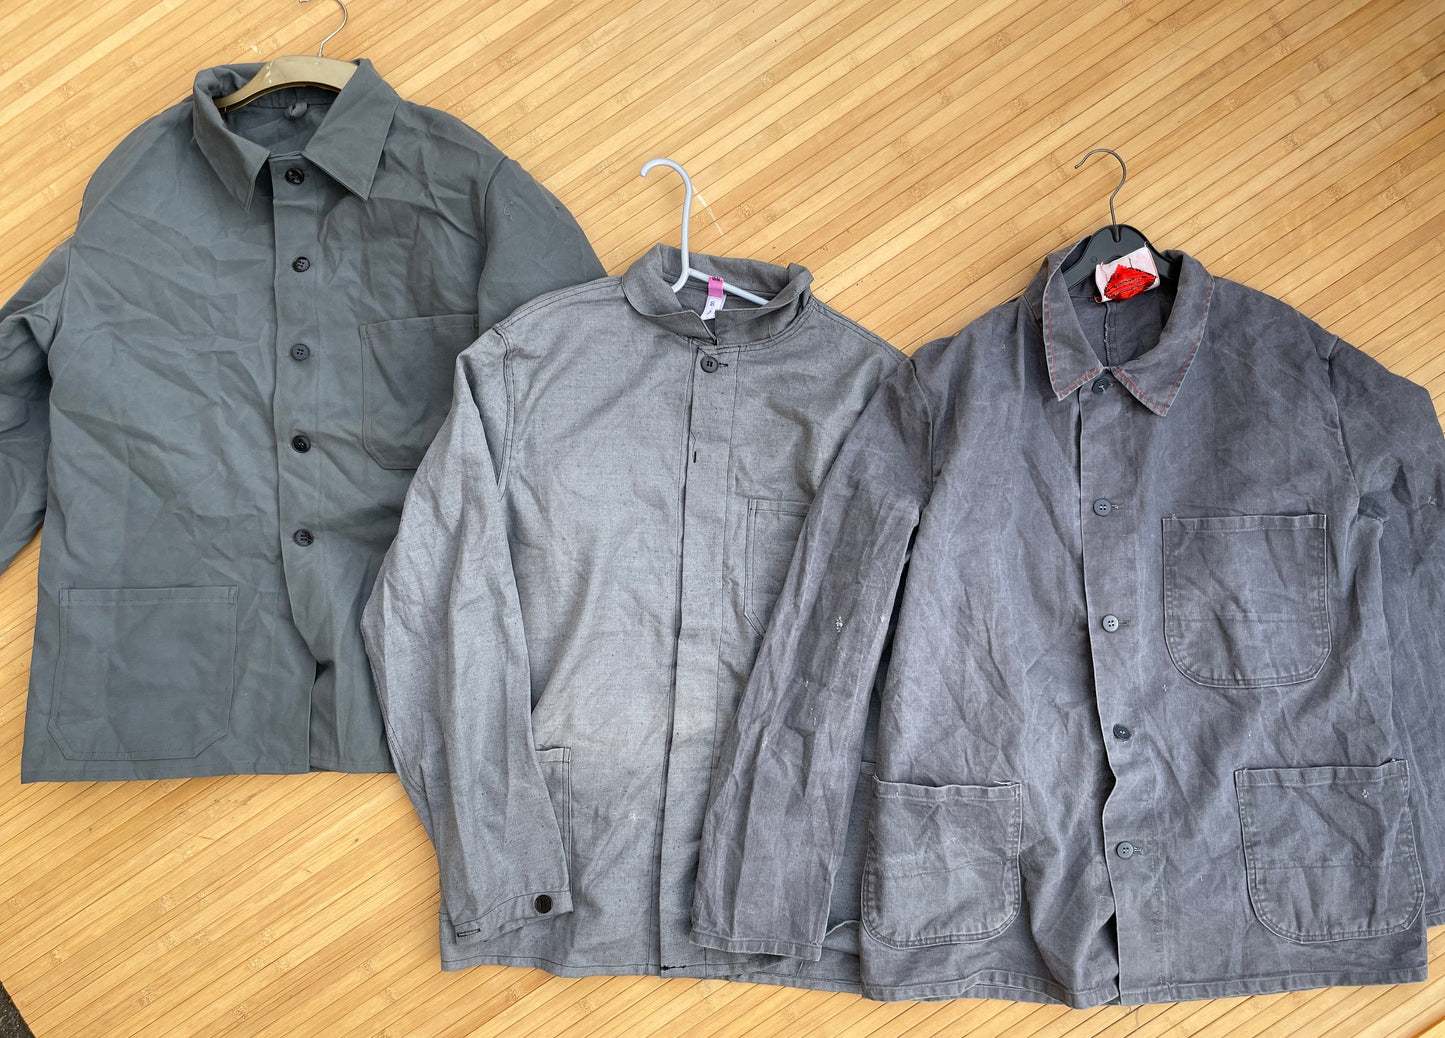 Vintage Workwear Chore Jacket Grey